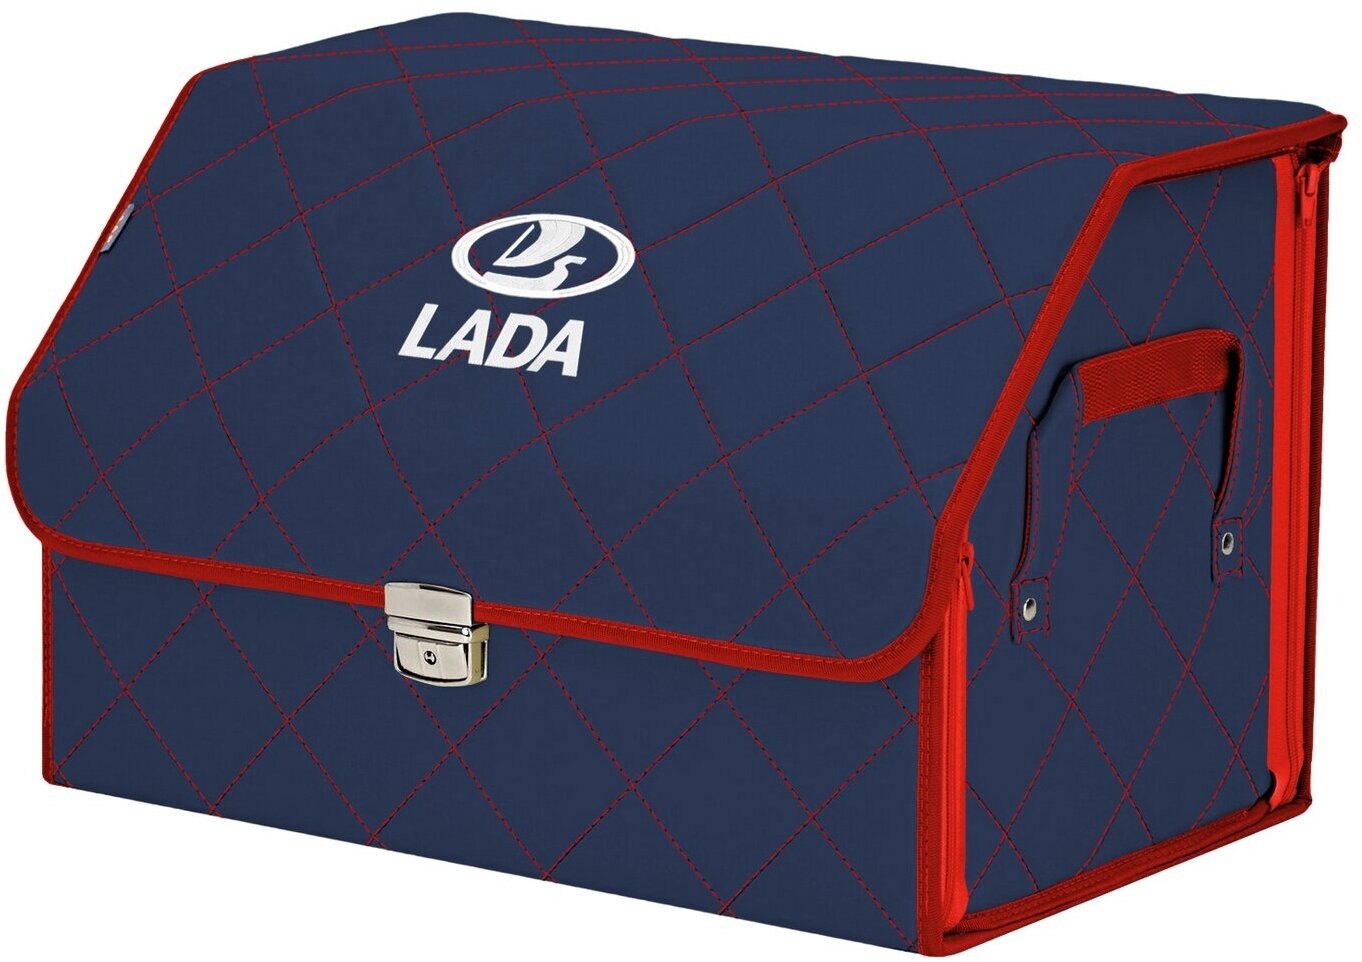 Органайзер-саквояж в багажник "Союз Премиум" (размер L). Цвет: синий с красной прострочкой Ромб и вышивкой LADA (лада).